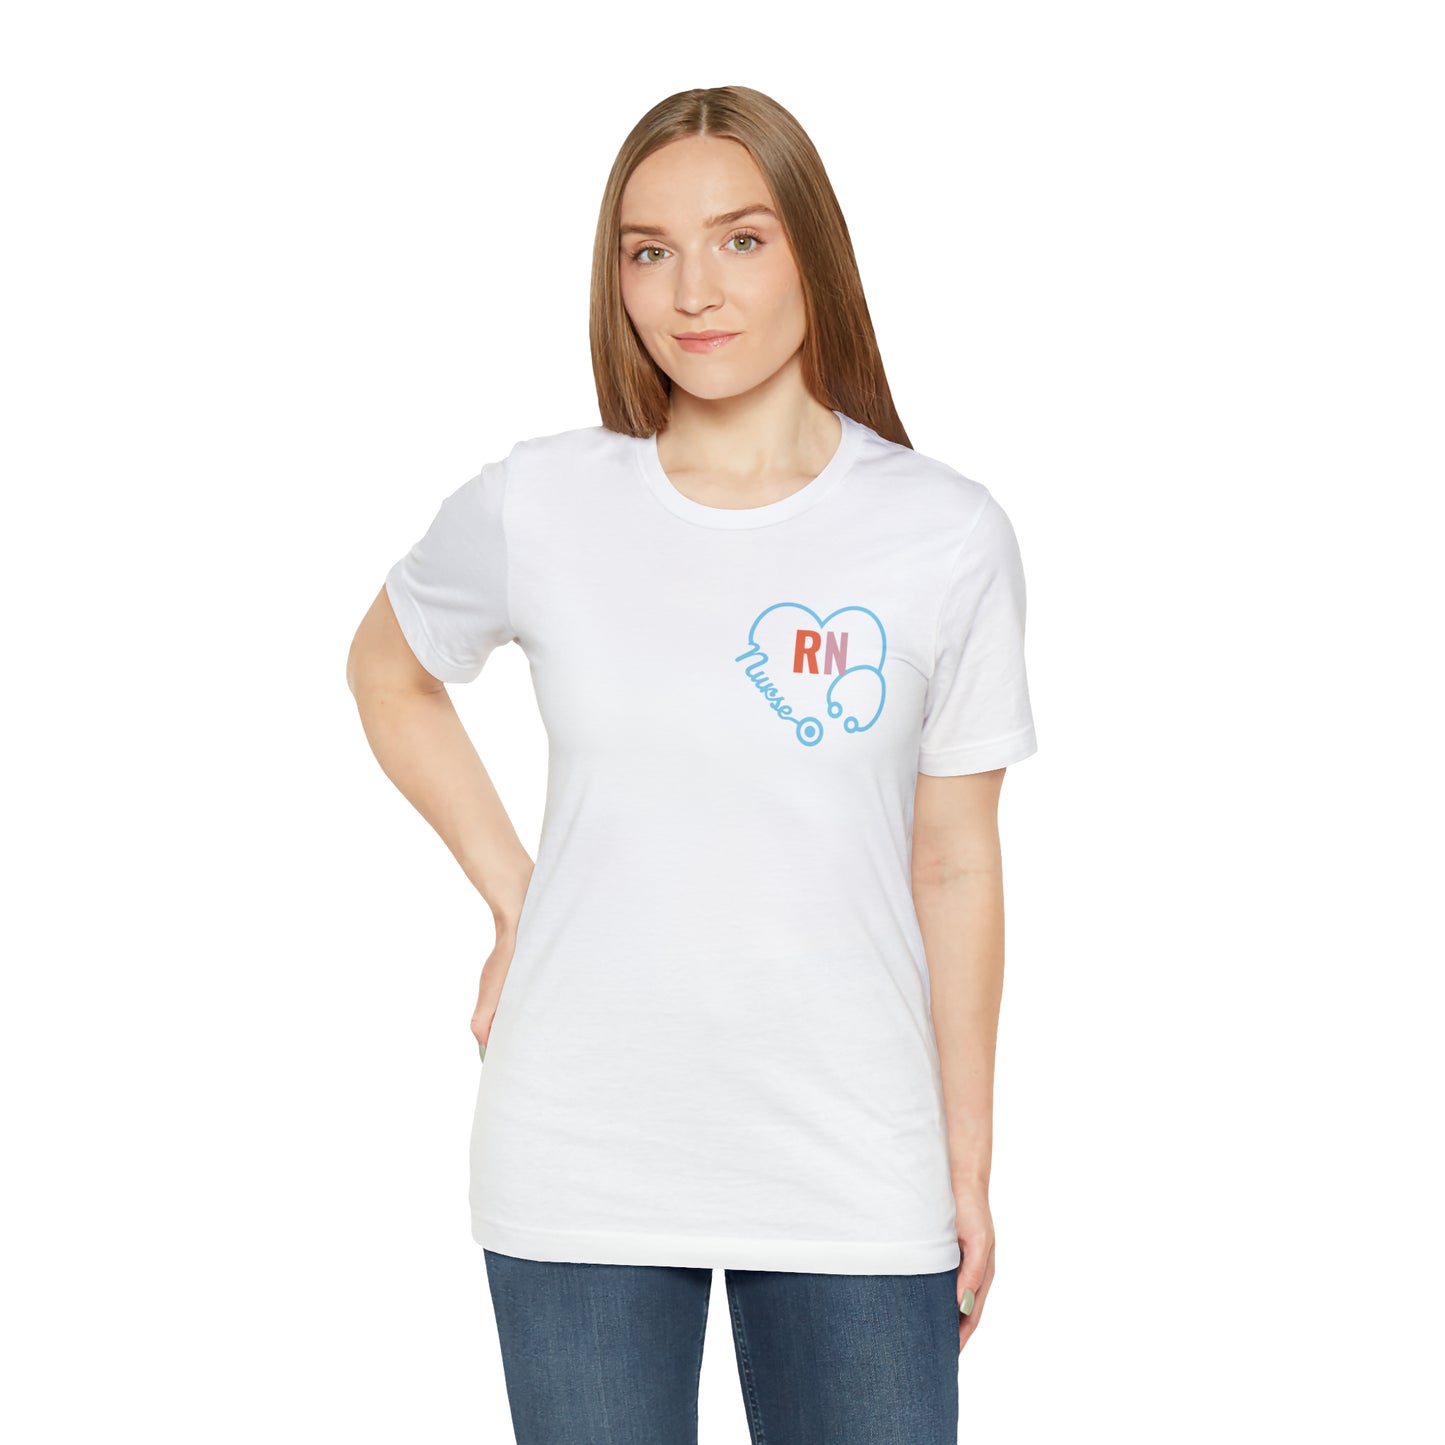 Registered Nurse Shirt for Women, RN TShirt for Registered Nurse, T267